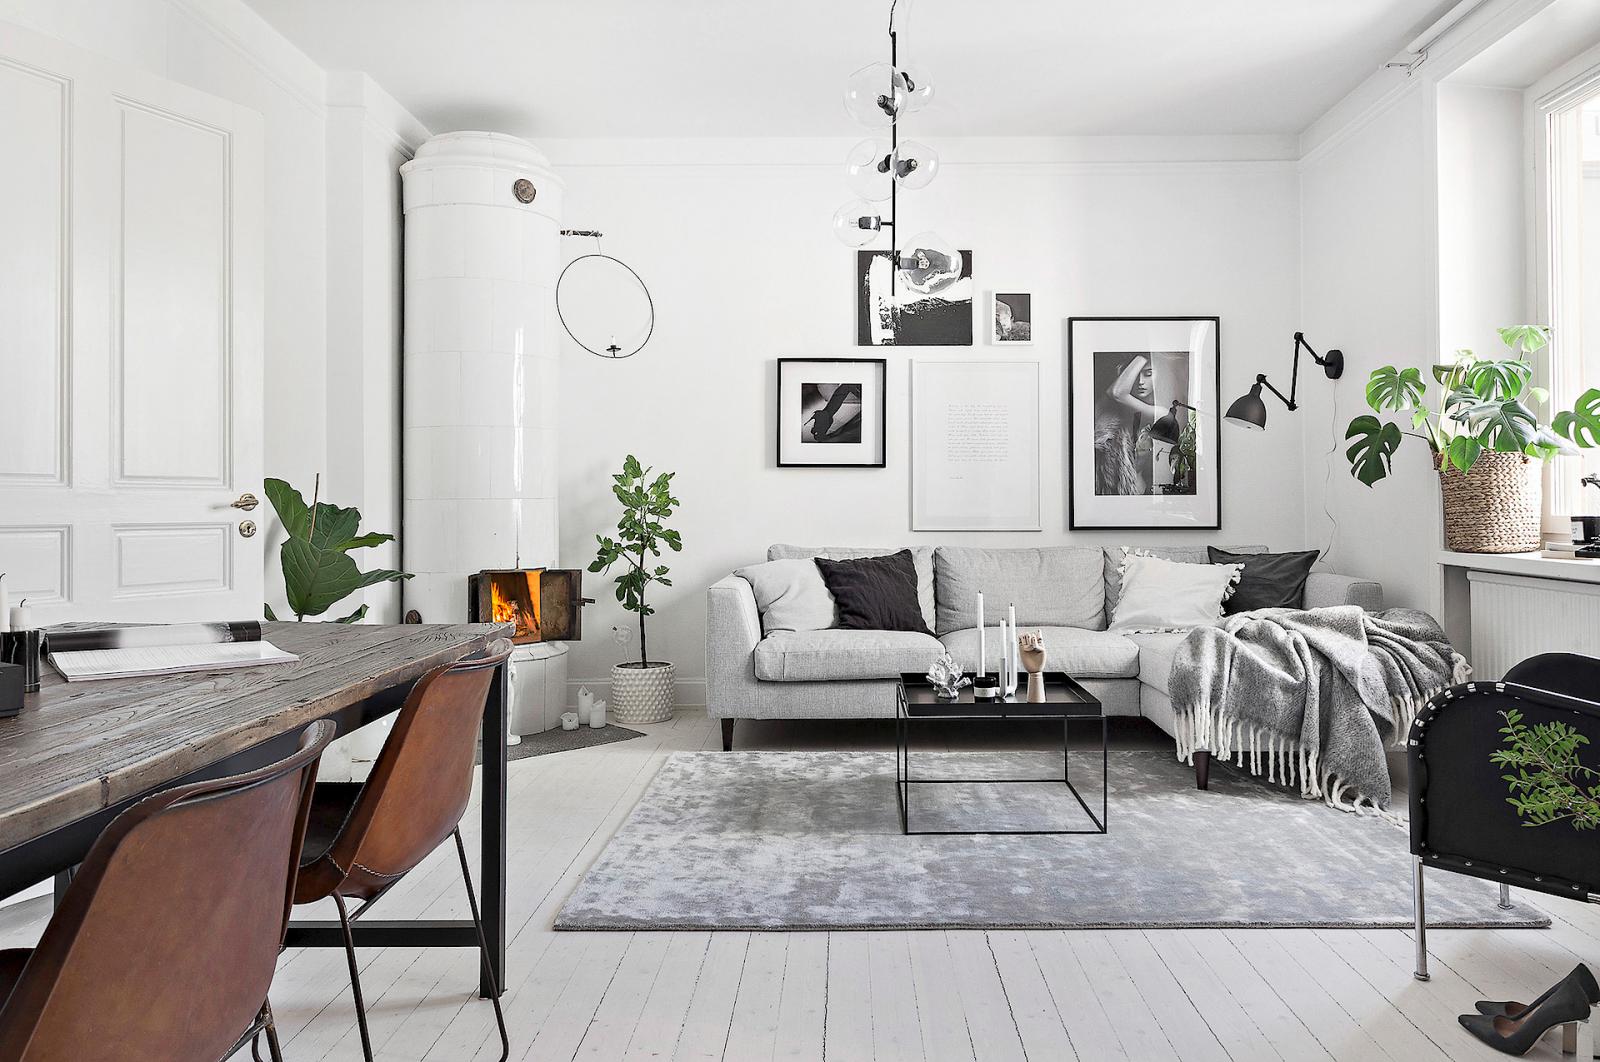 Hình ảnh phòng khách thoáng sáng với sofa xám trắng, tranh treo tường, cây xanh trang trí